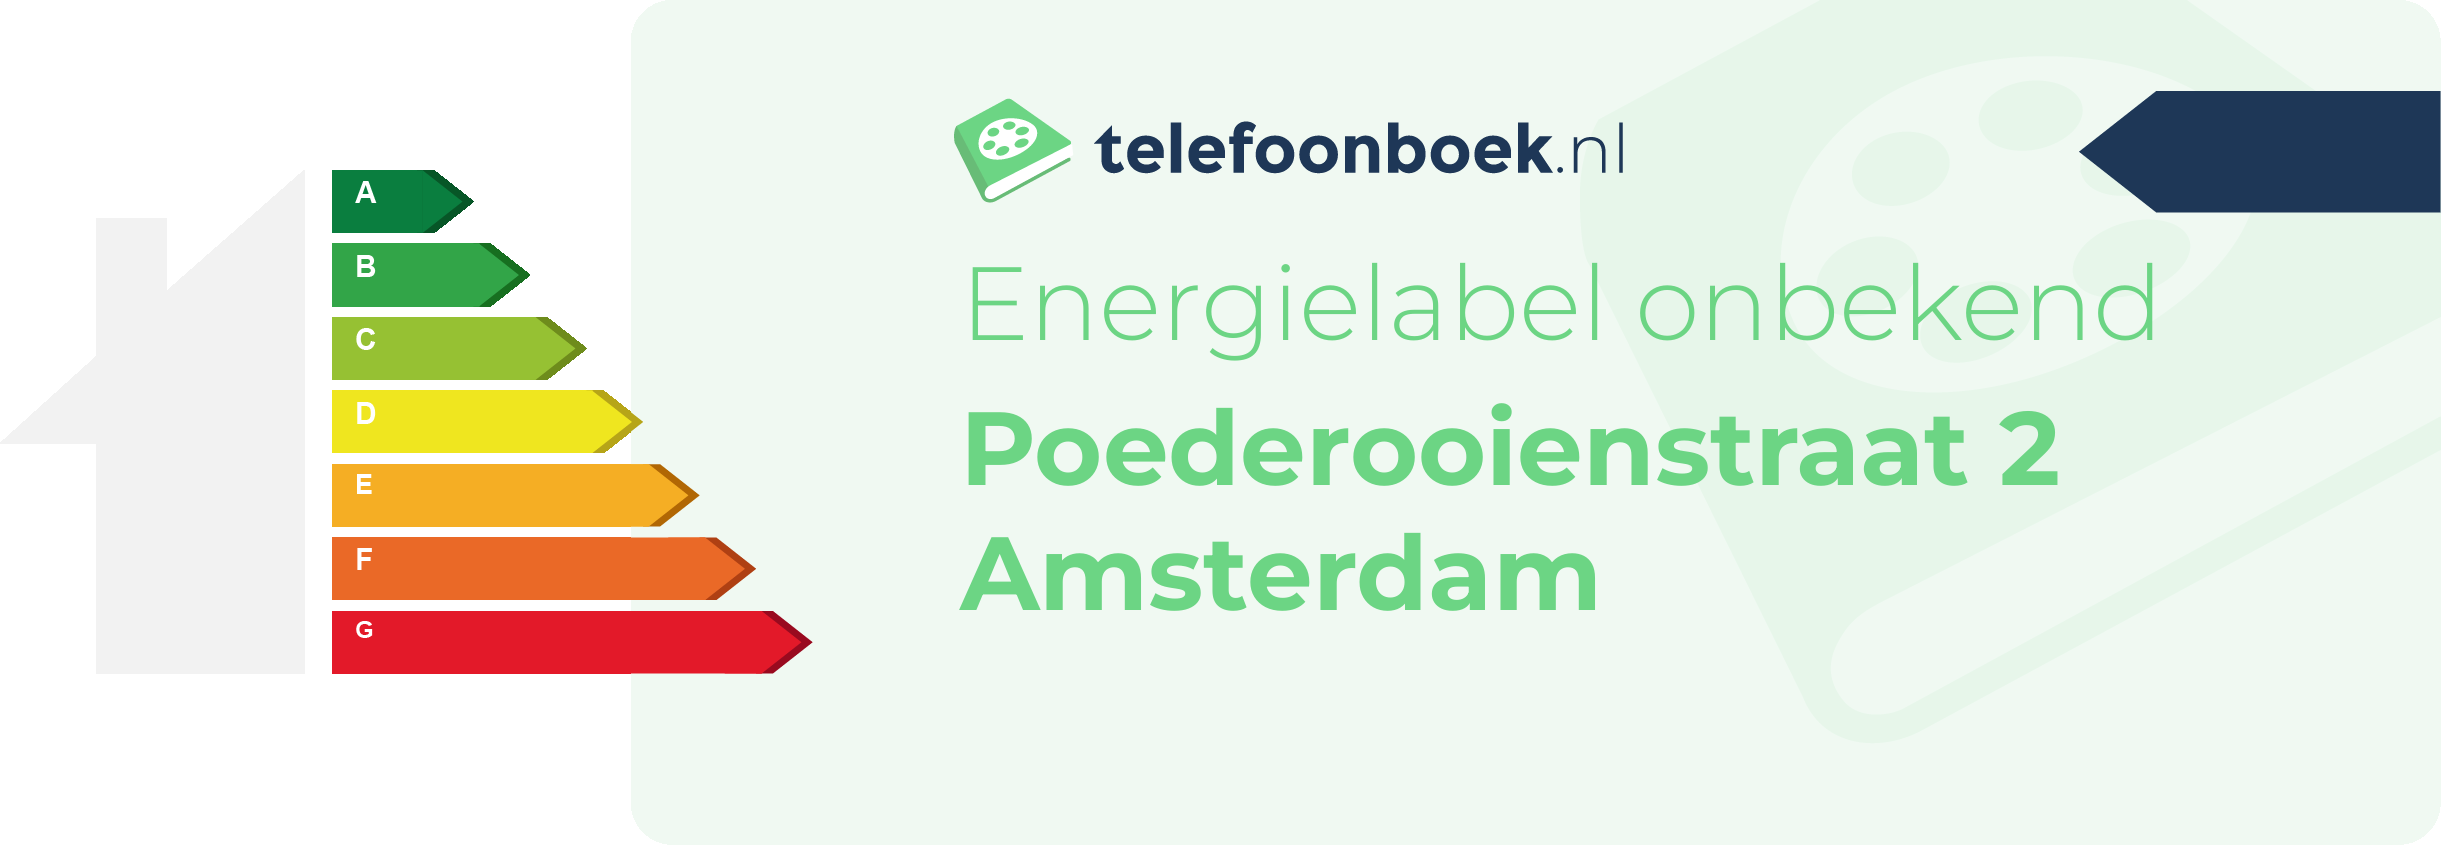 Energielabel Poederooienstraat 2 Amsterdam